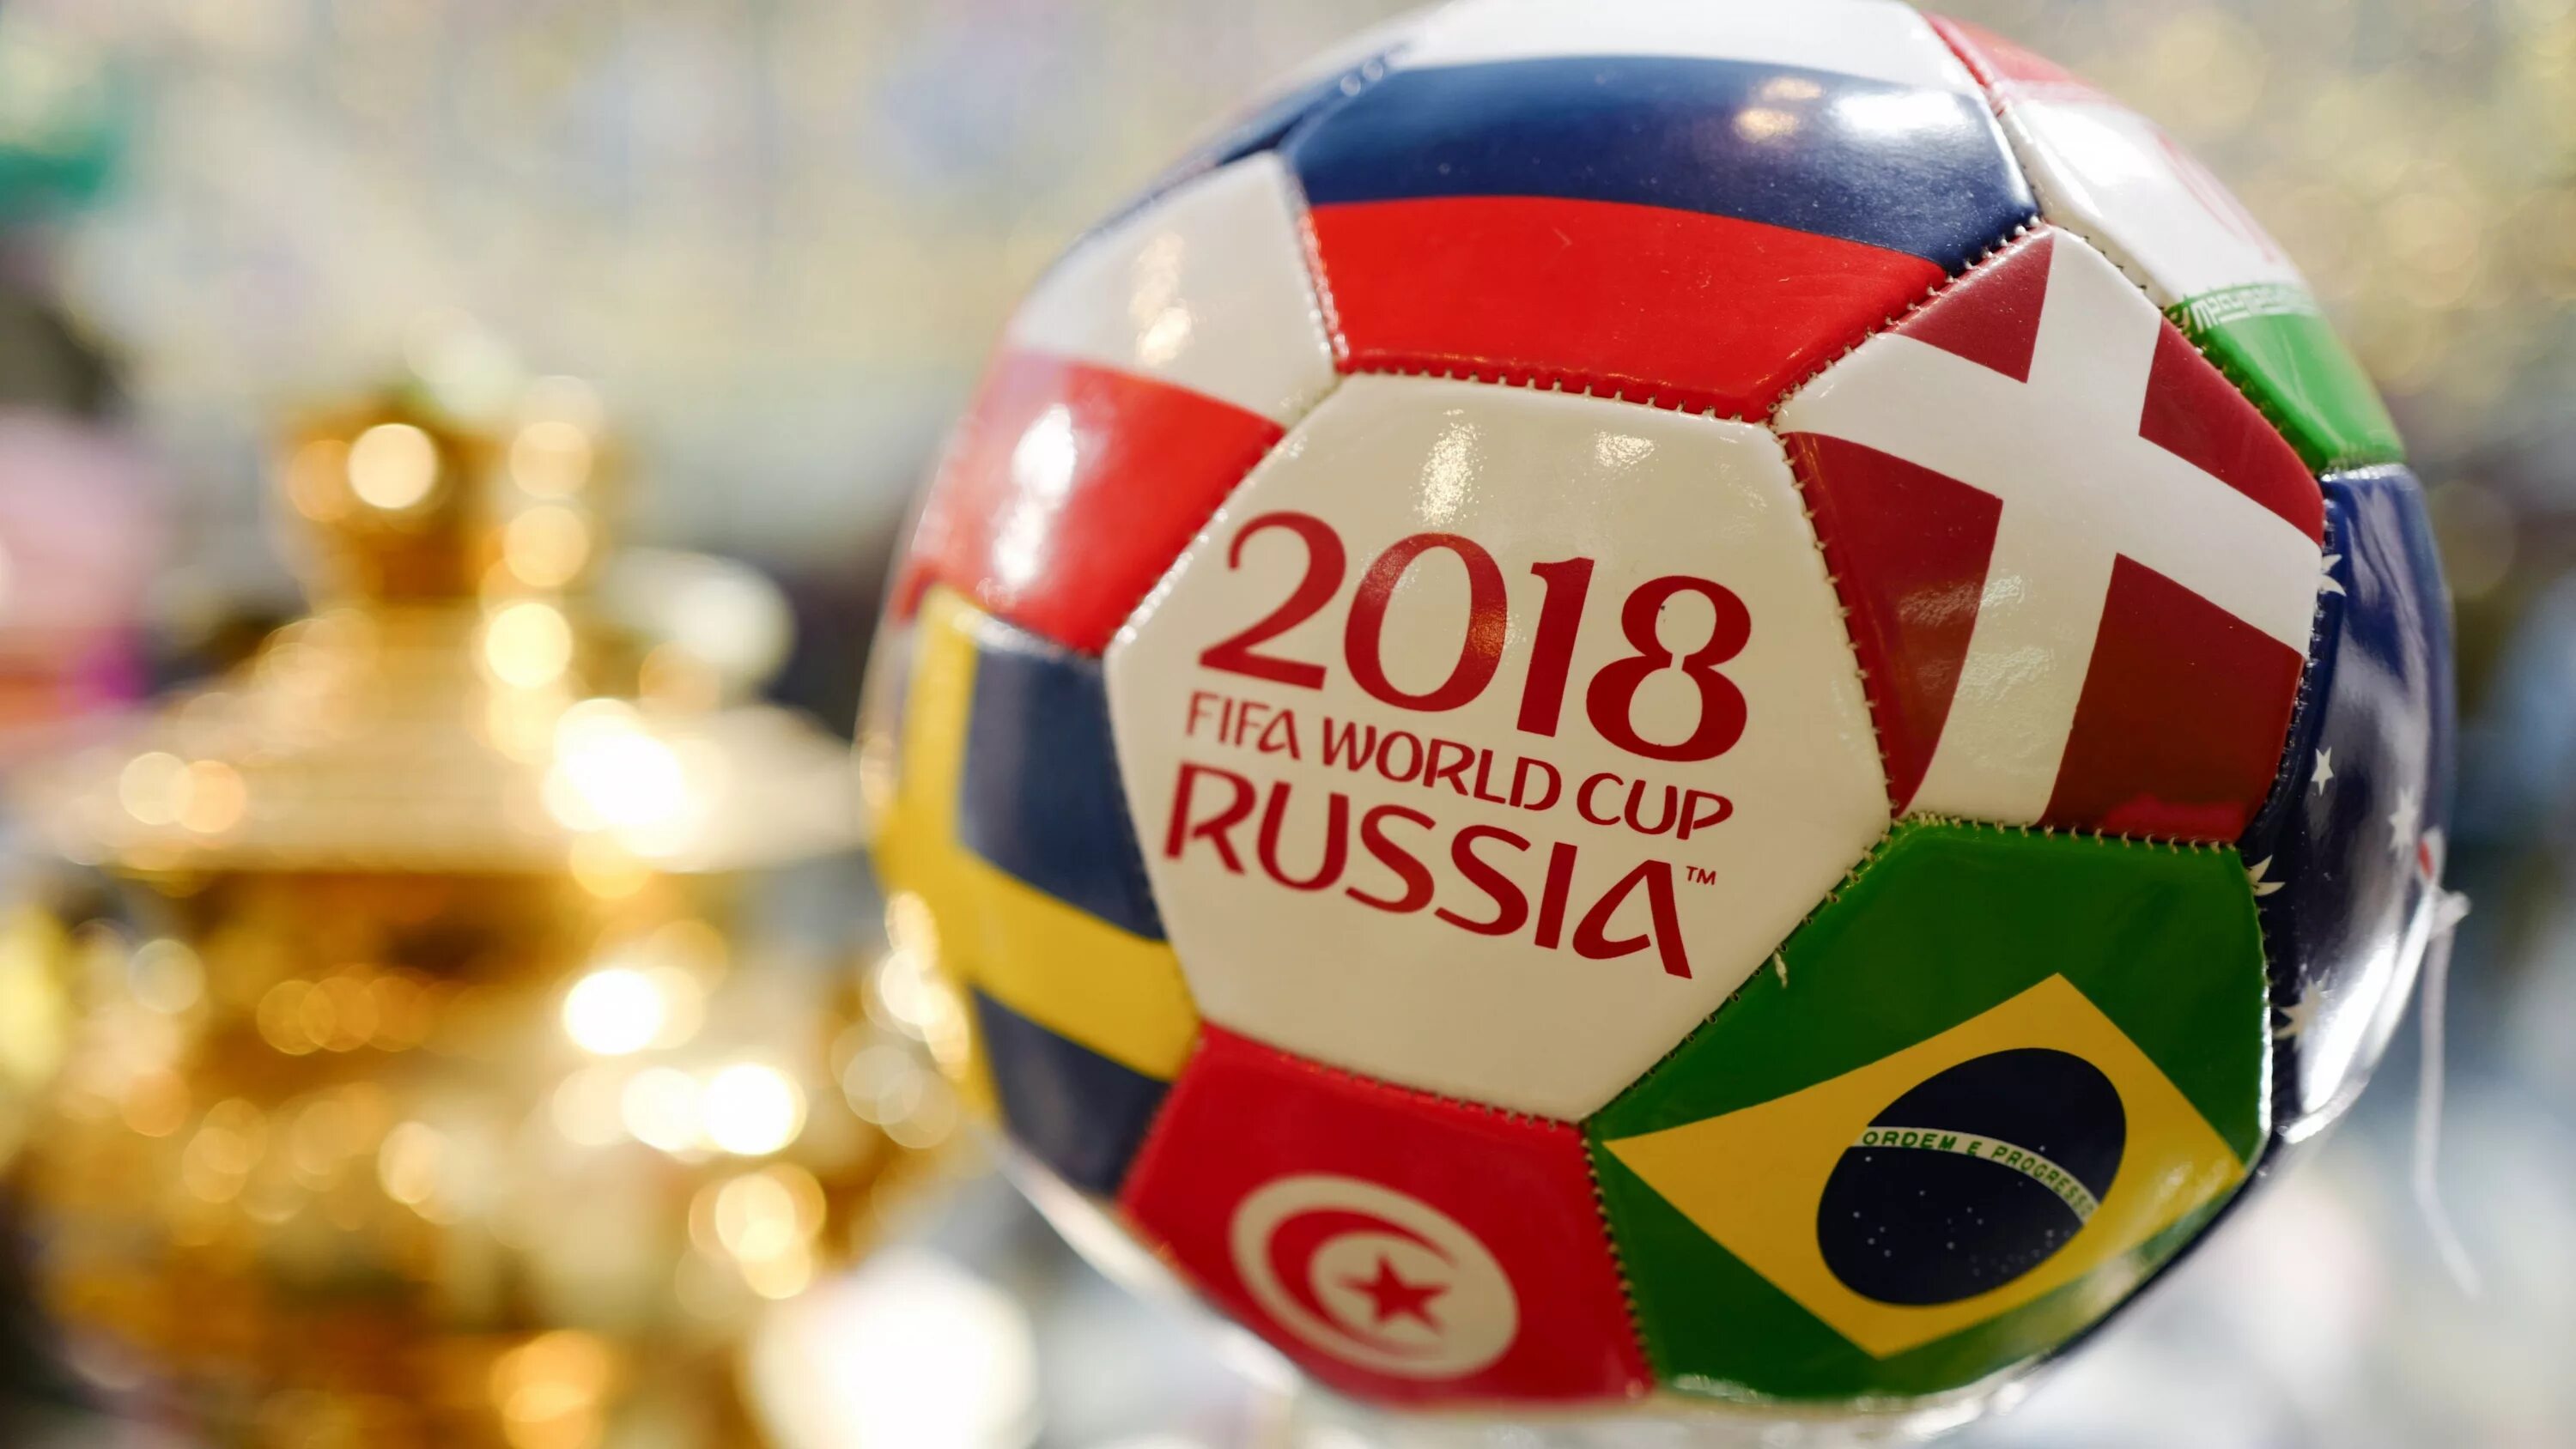 World cup soccer. ФИФА 2018 Россия.